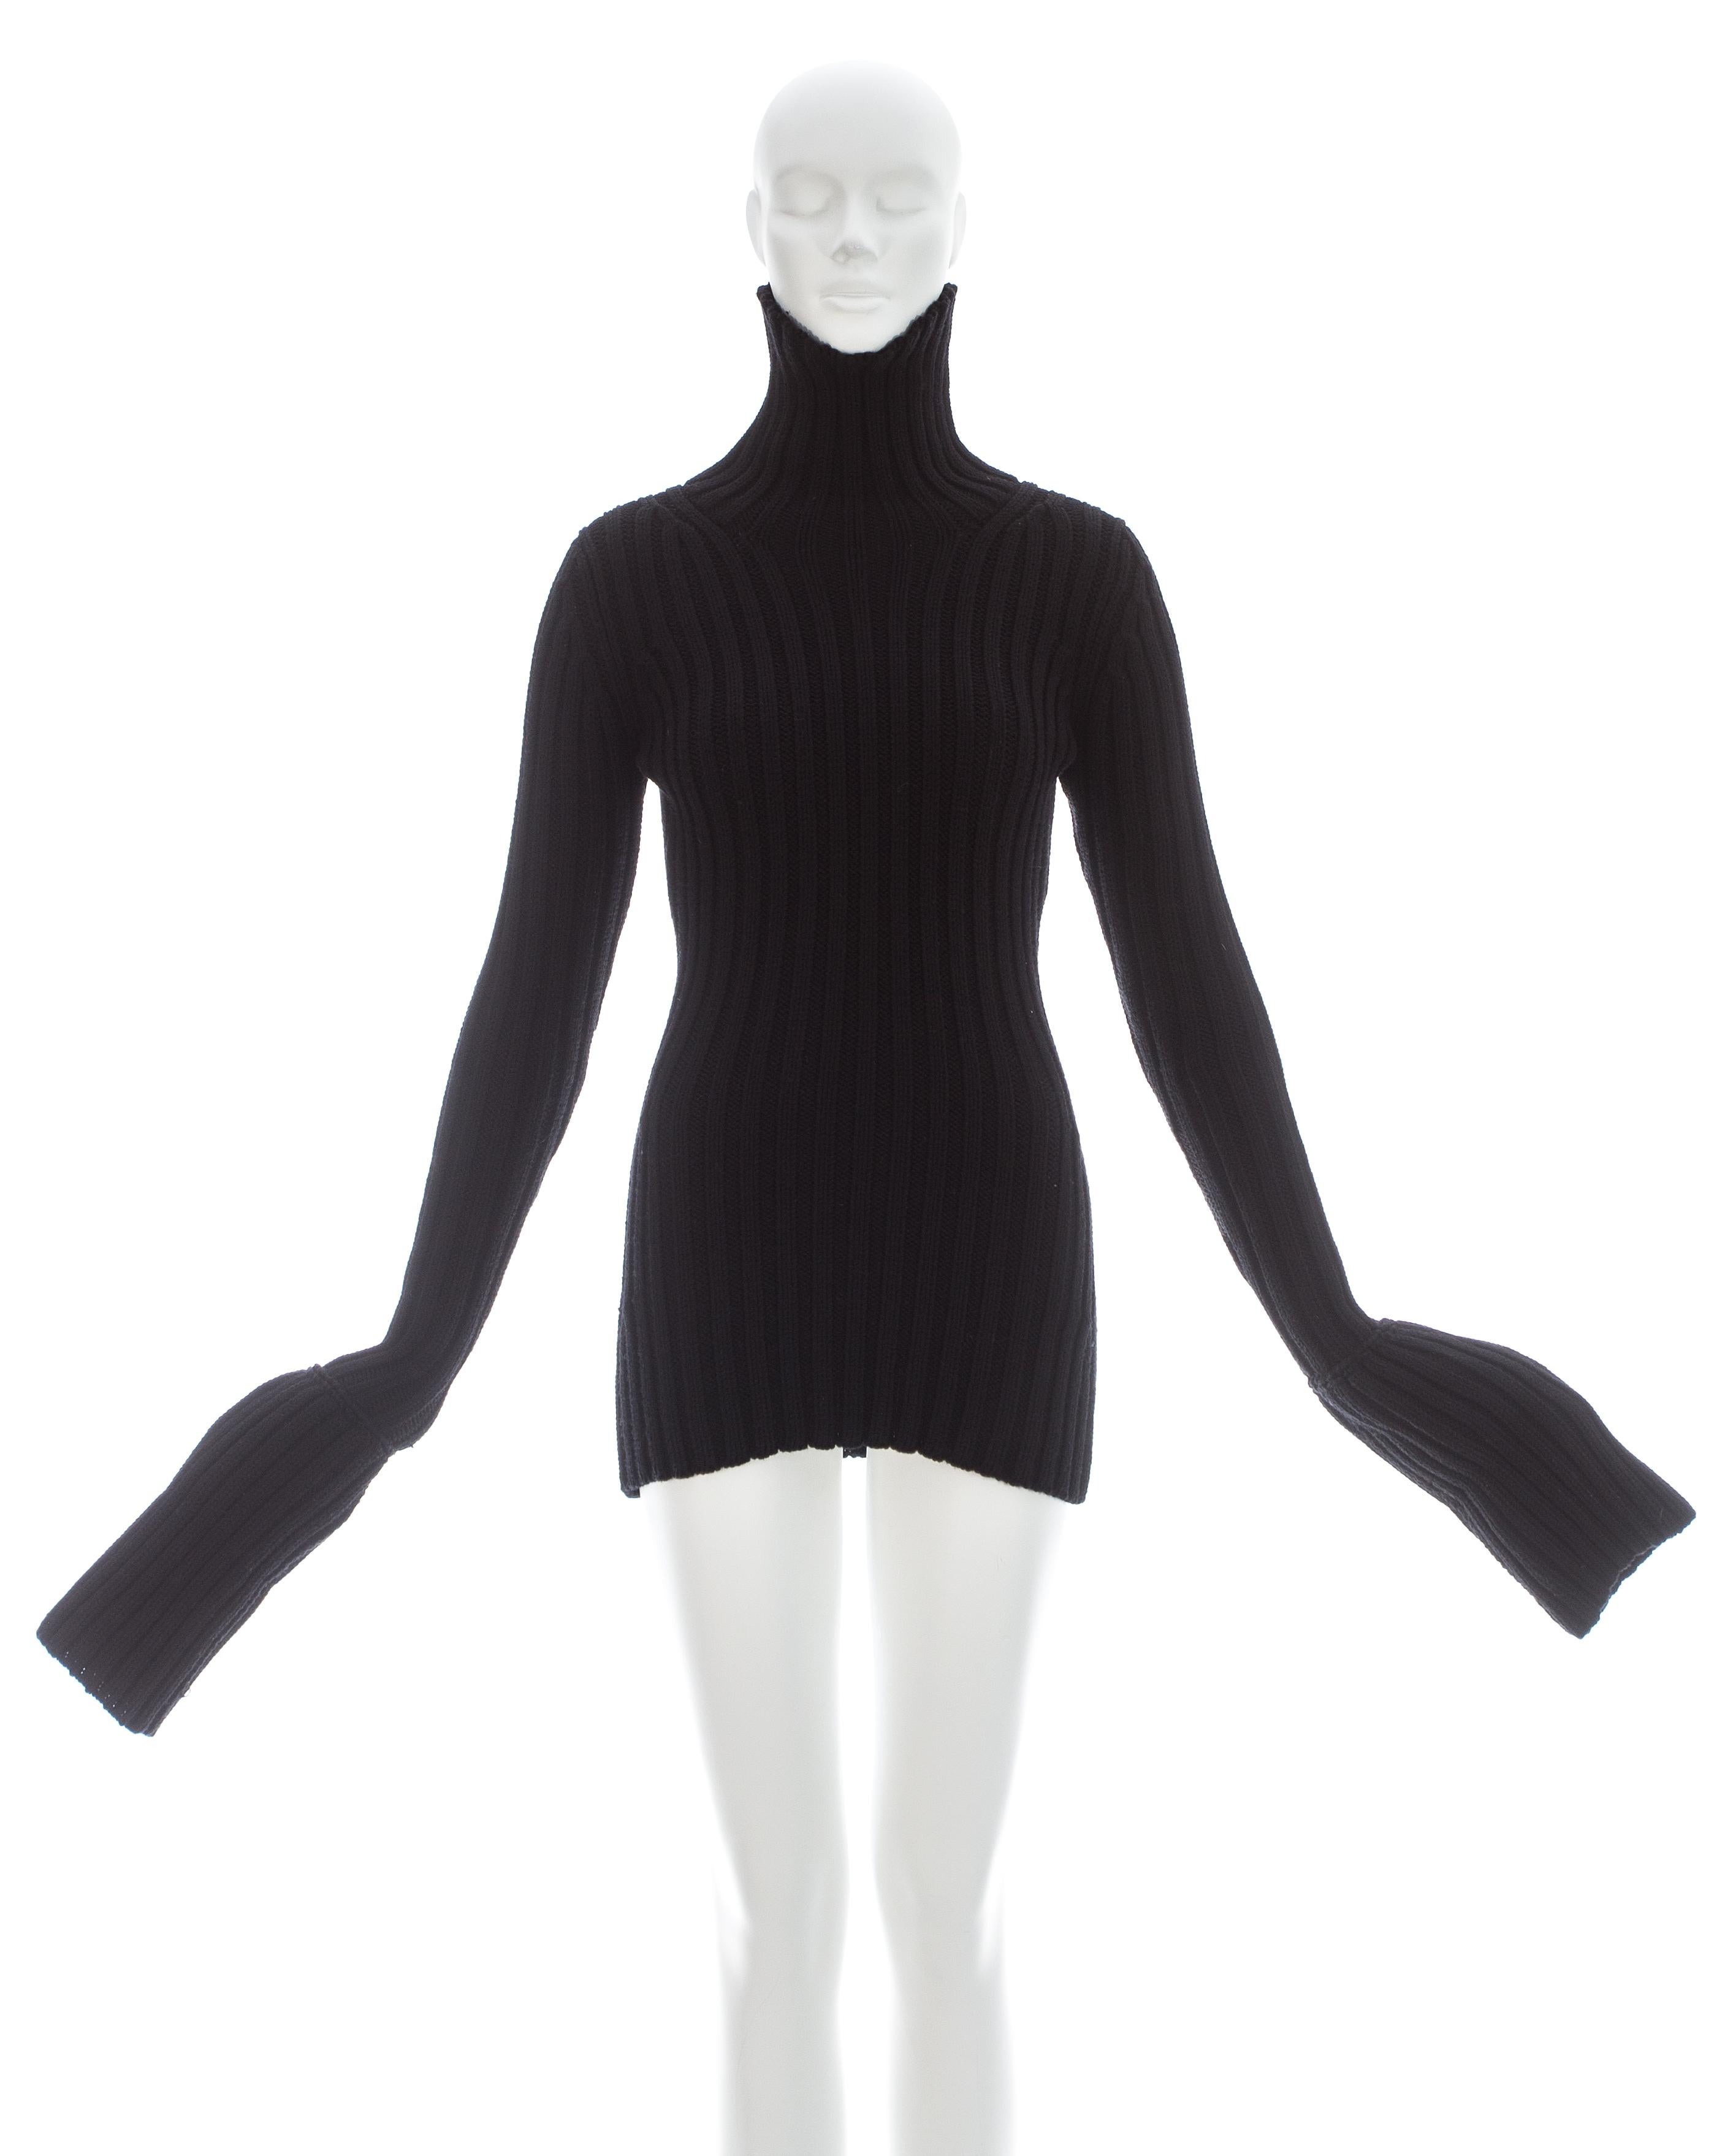 Yohji Yamamoto; Black wool knitted turtle neck sweater with extra long turn-up cuffs 

Fall-Winter 1998